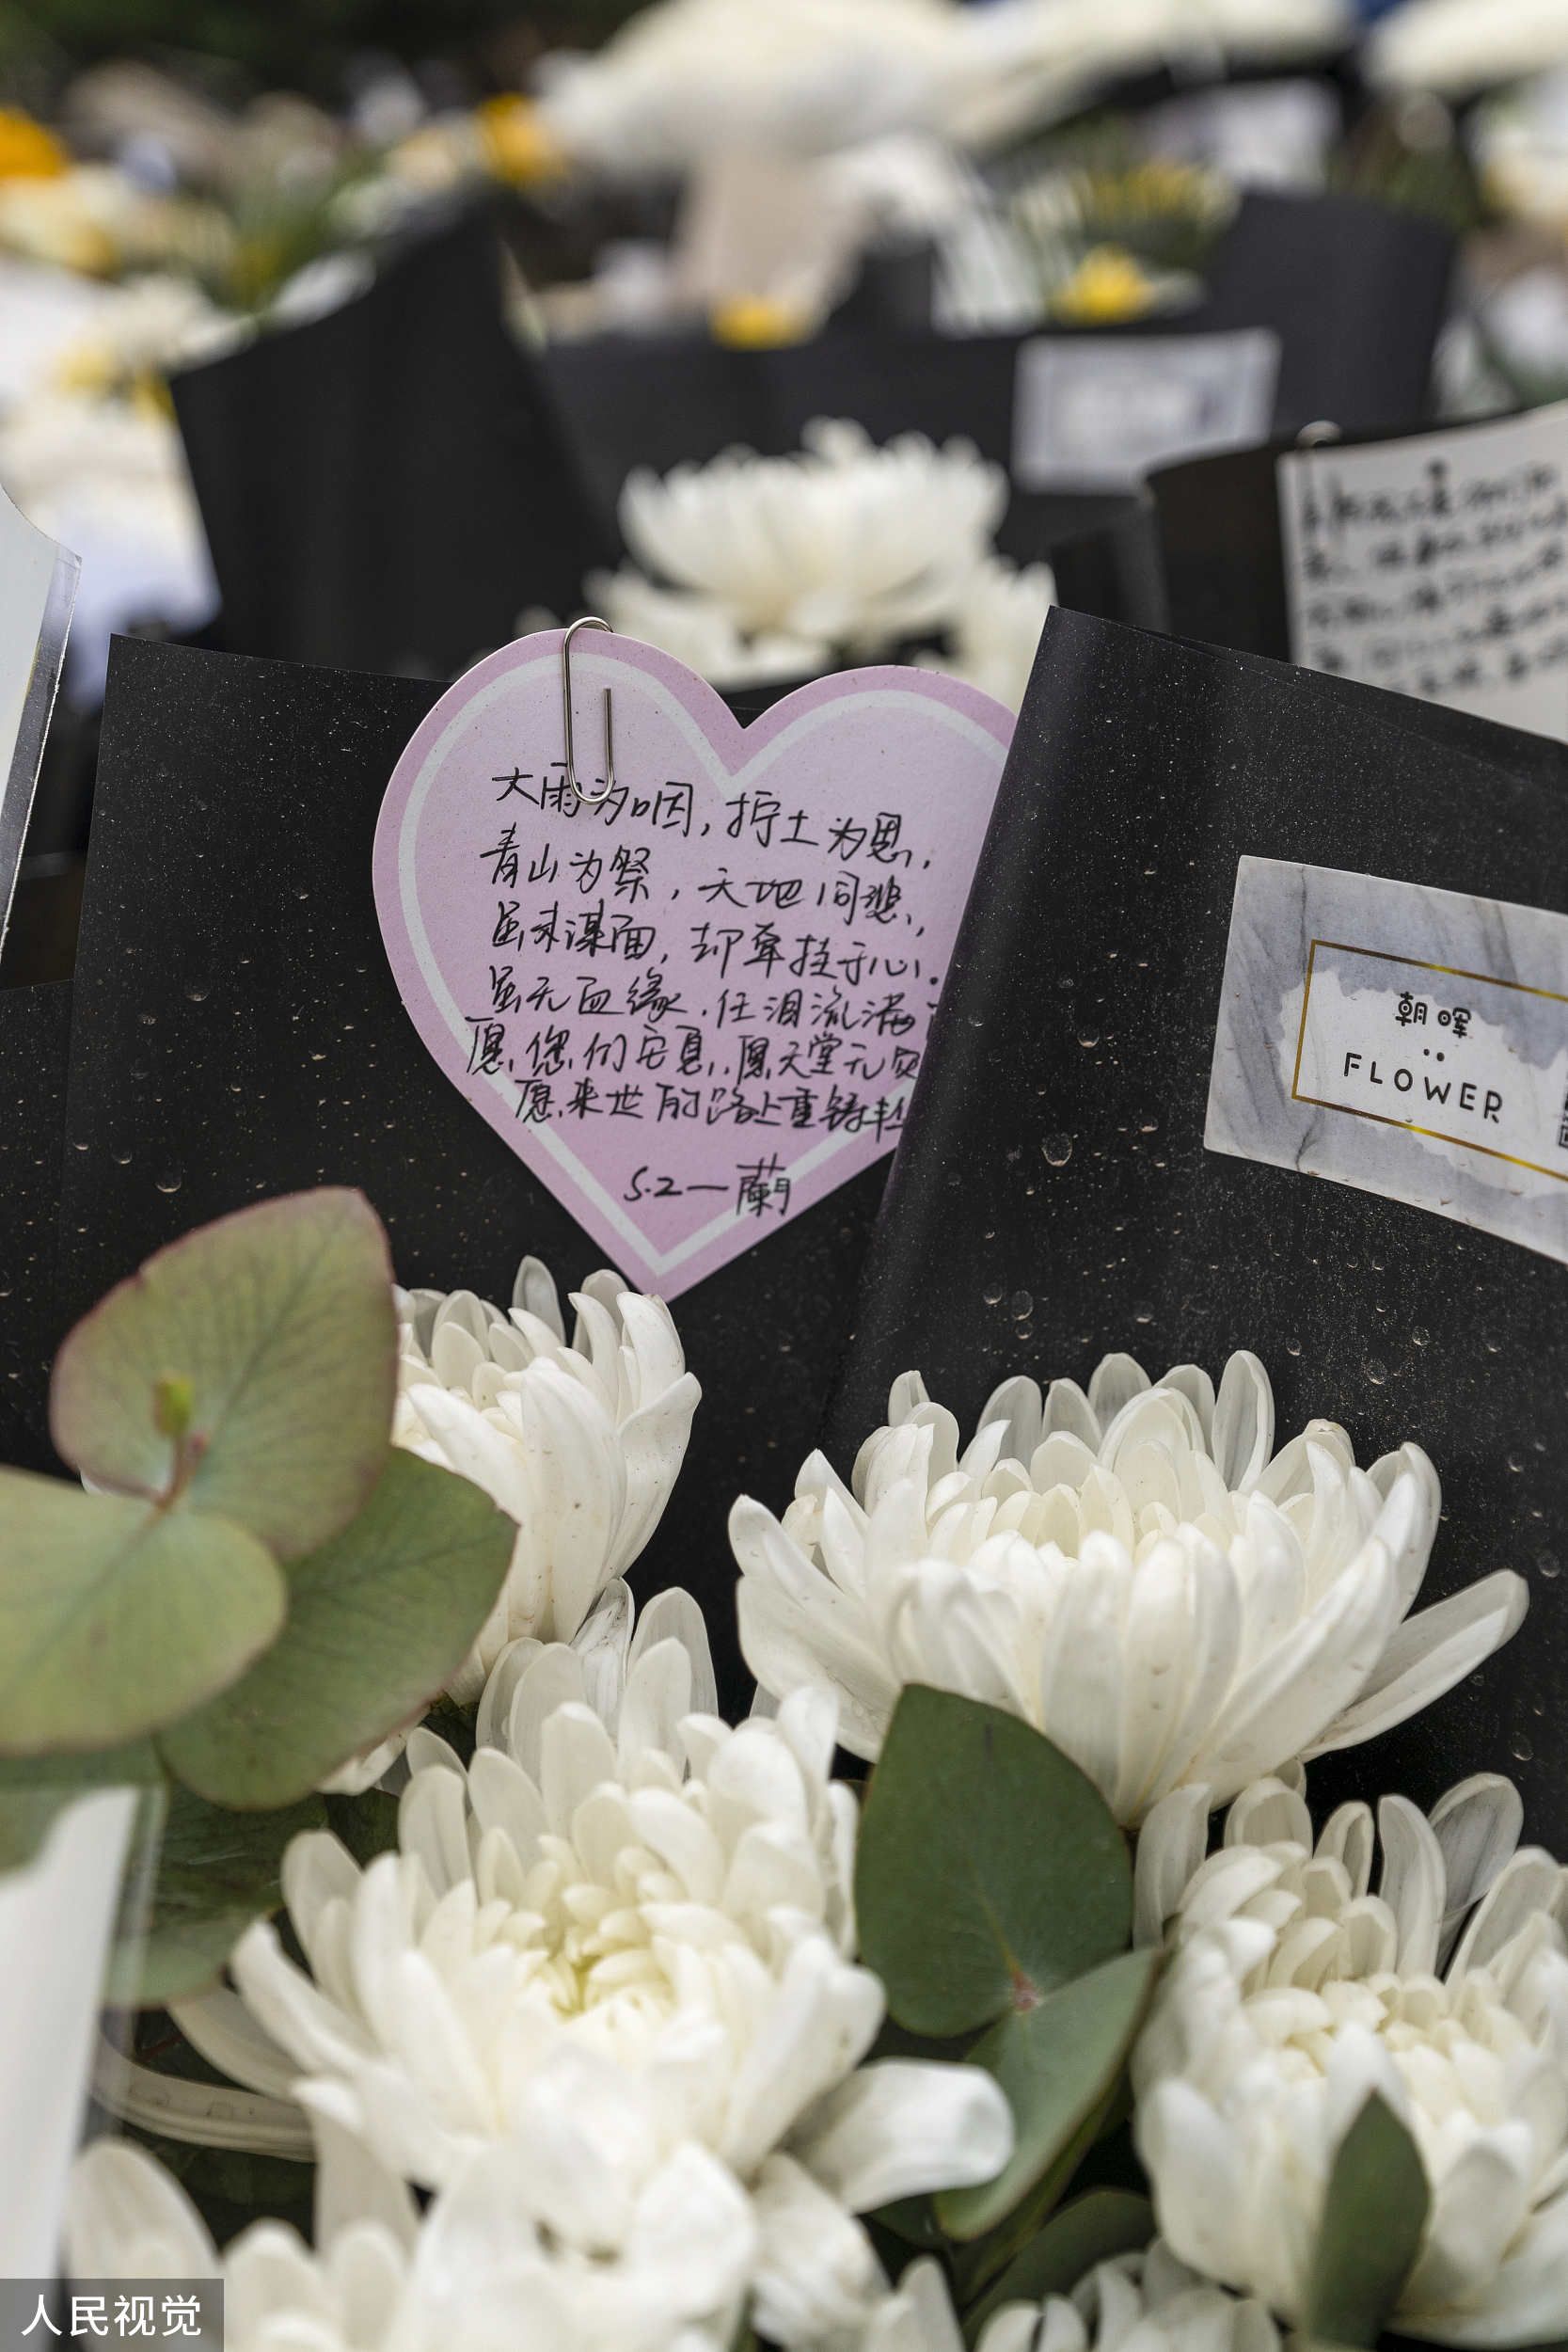 广西藤县 东航客机事故现场附近村口摆满悼念花束群众献花遥寄哀思